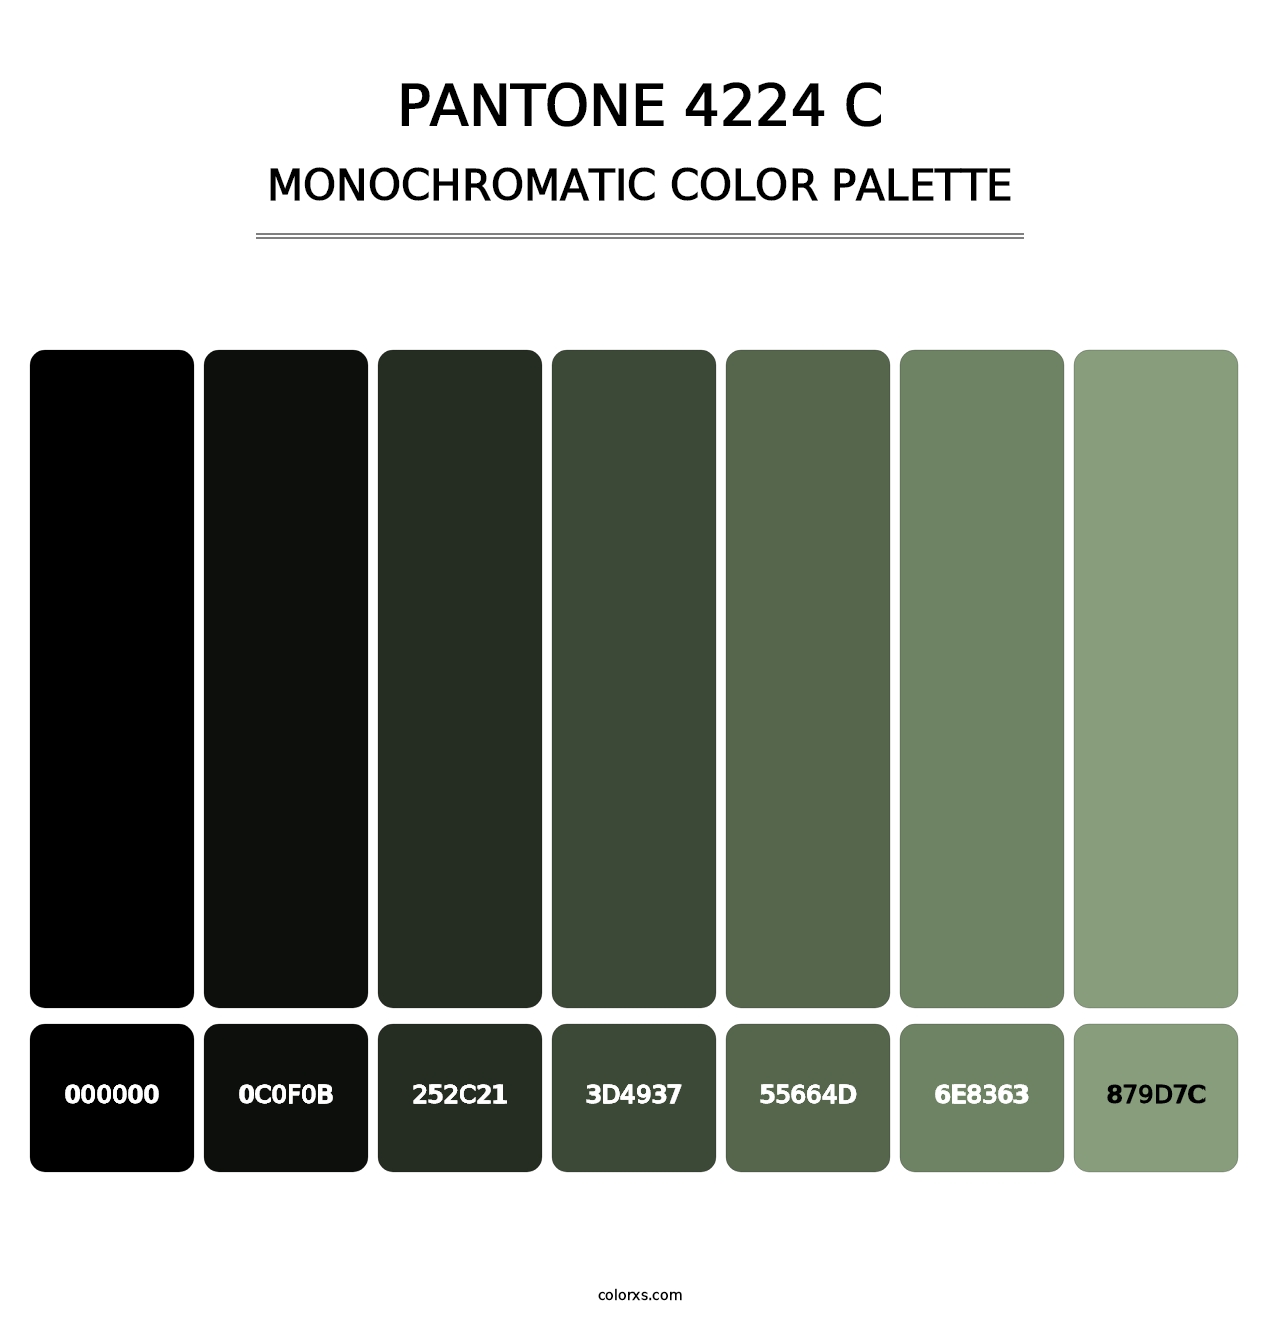 PANTONE 4224 C - Monochromatic Color Palette